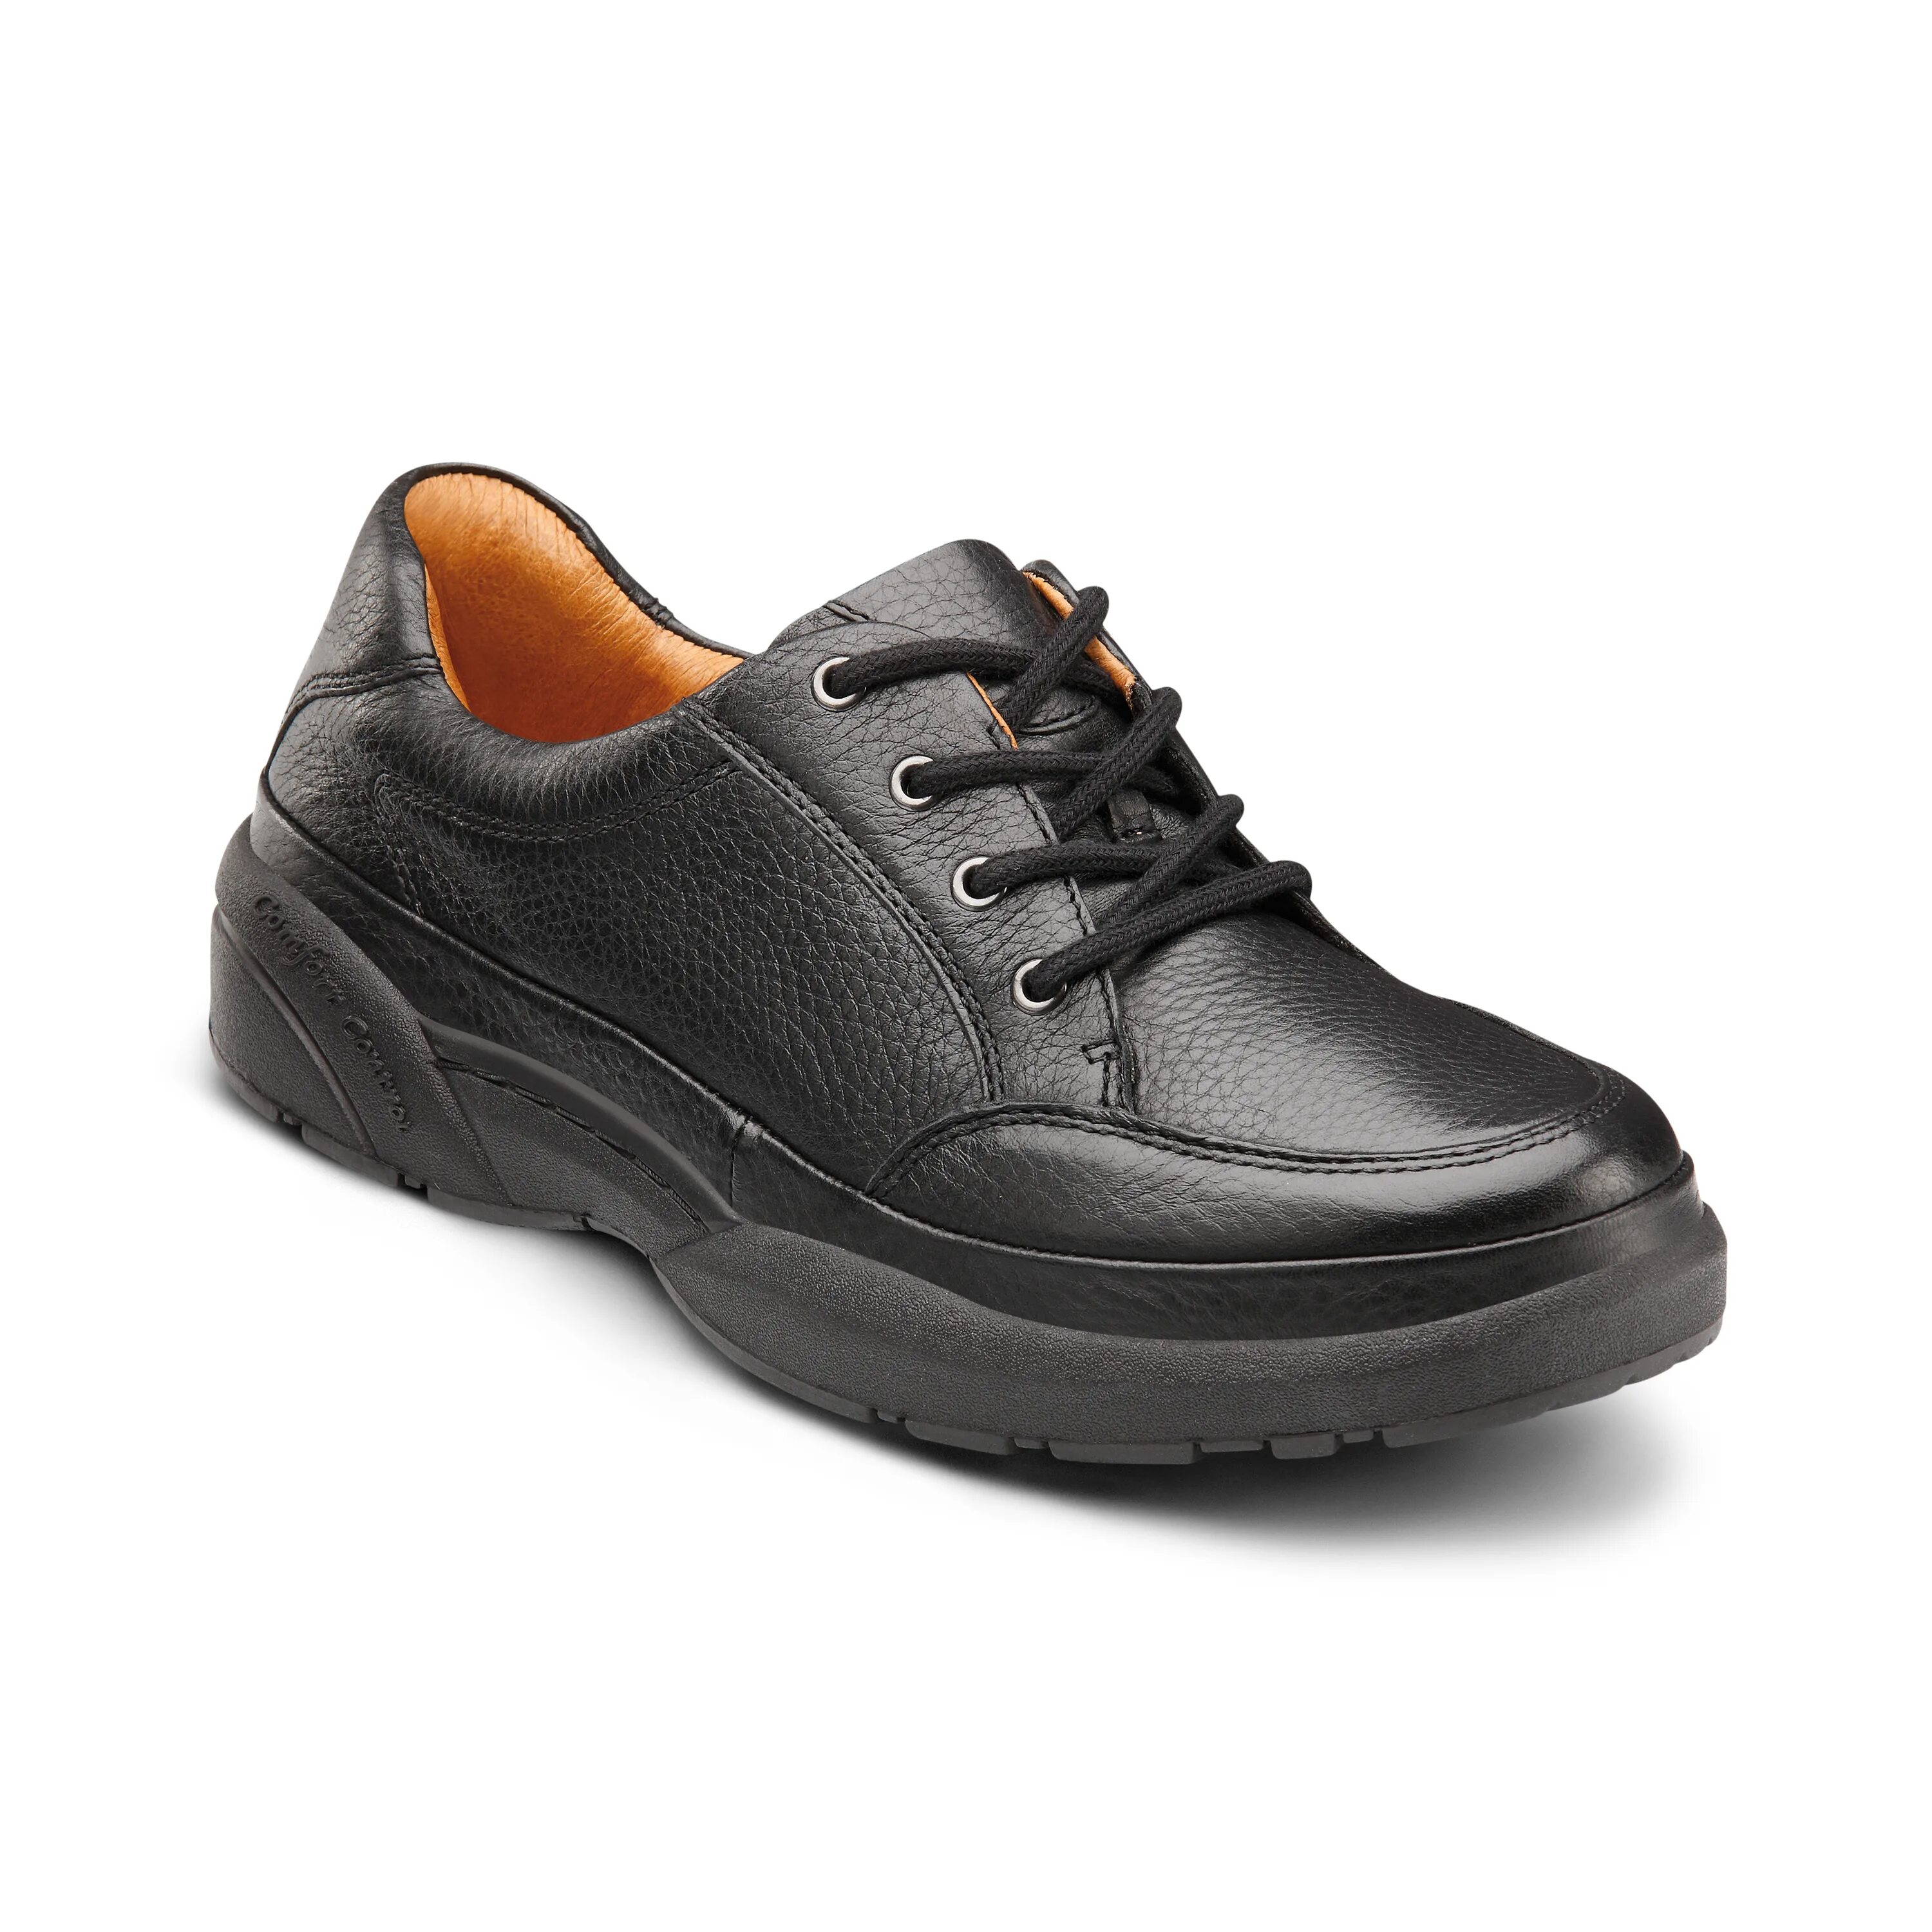 Туфли комфорт. Dr Comfort обувь. Кроссовки ортопедические Dr. Comfort. Ботинки Comfort sole. Обувь w22.